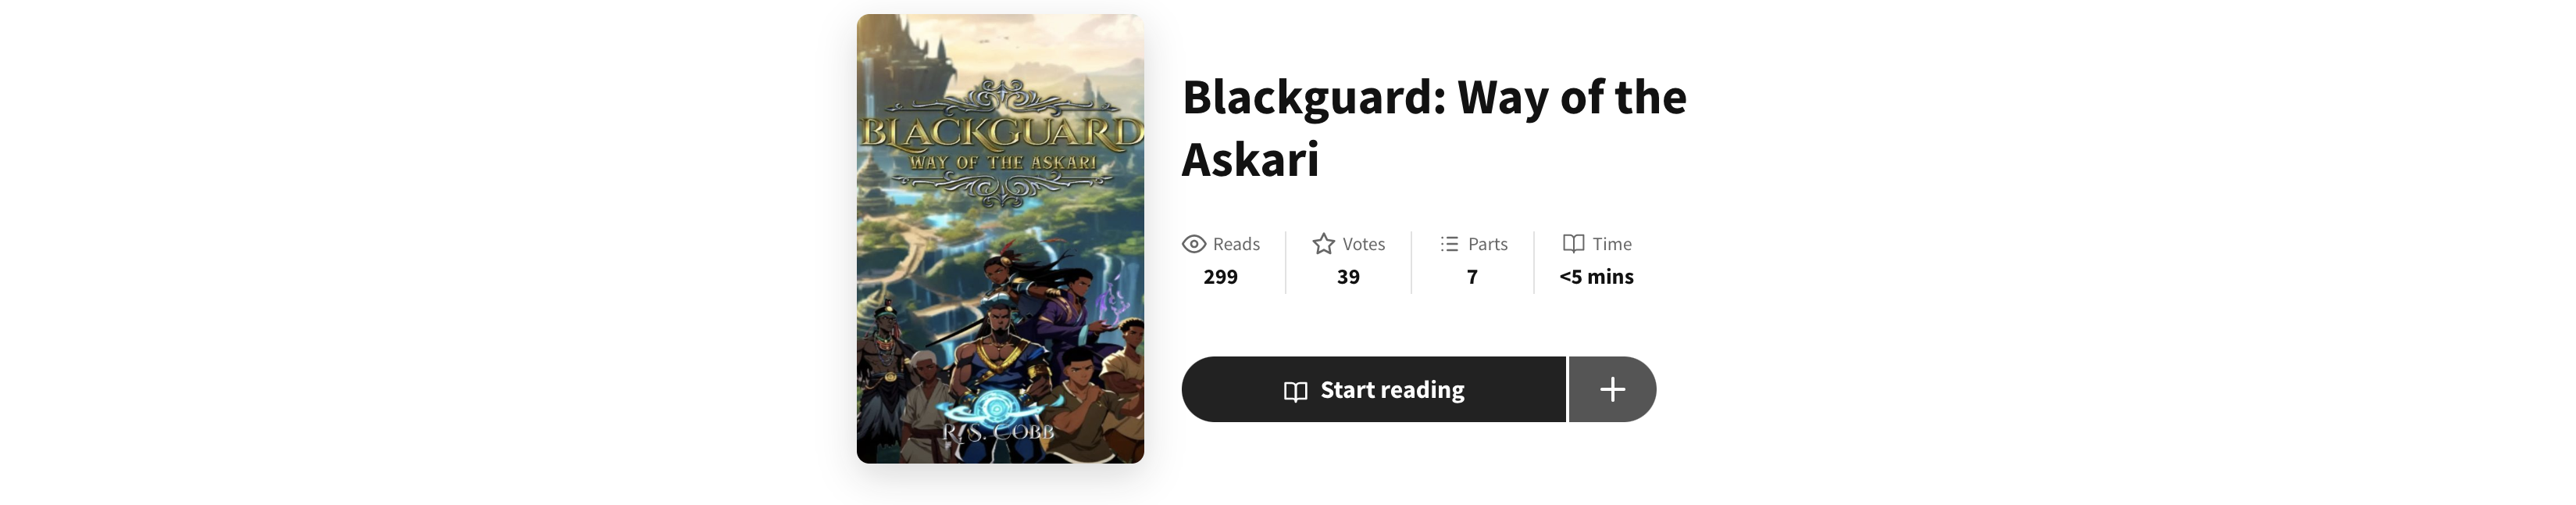 Blackguard: Way of the Askari - EXCLUSIVE WATTPAD PREVIEW